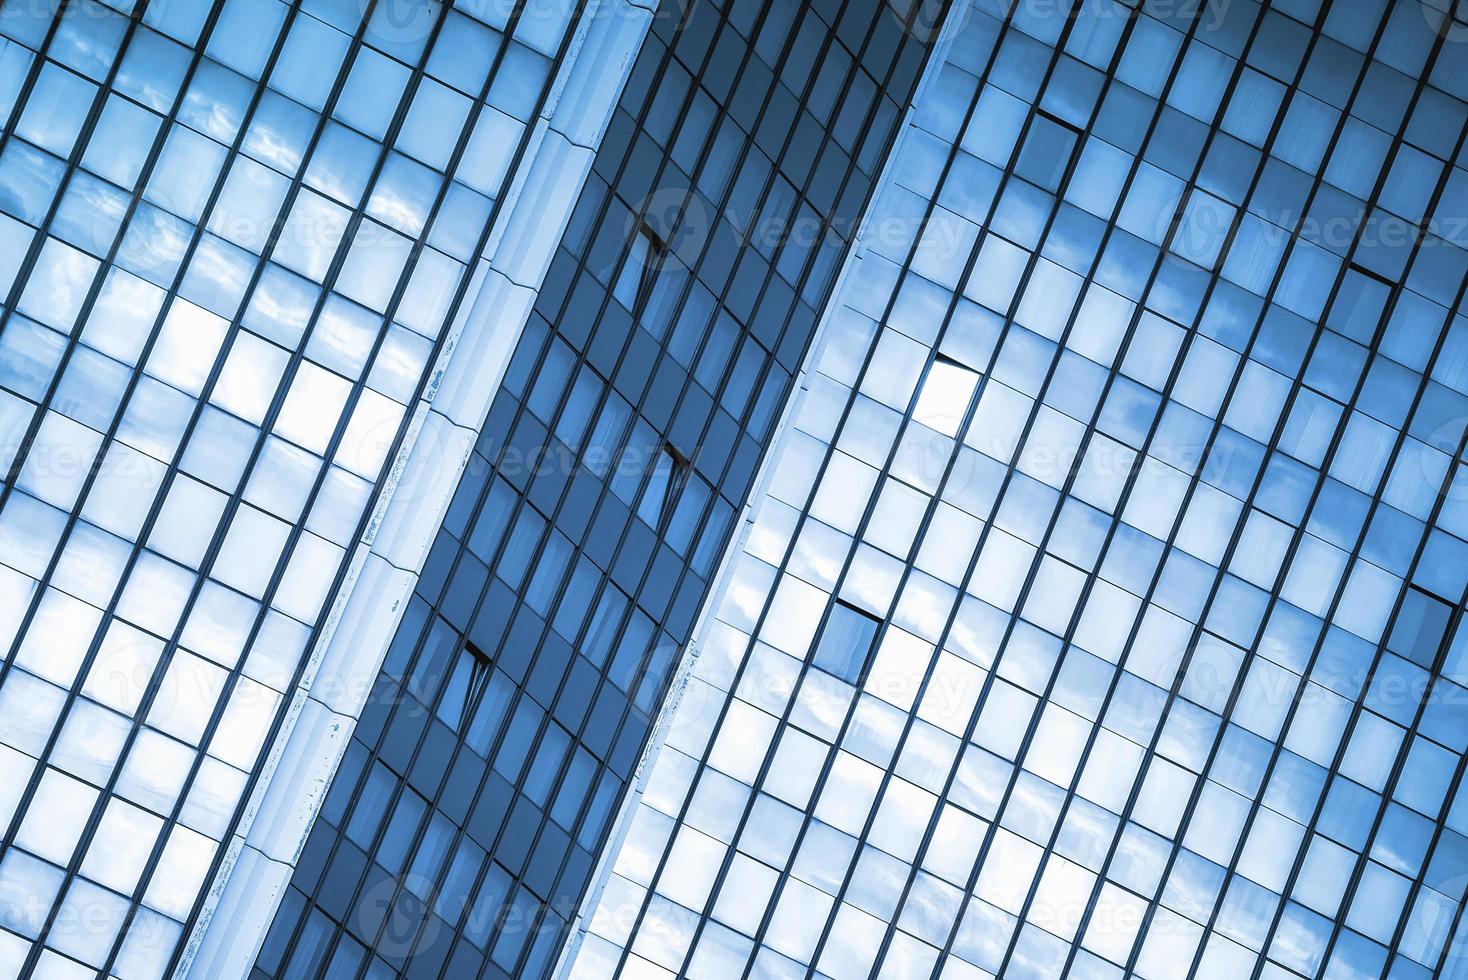 moden escritório comercial edifício windows repetitivo padrão foto